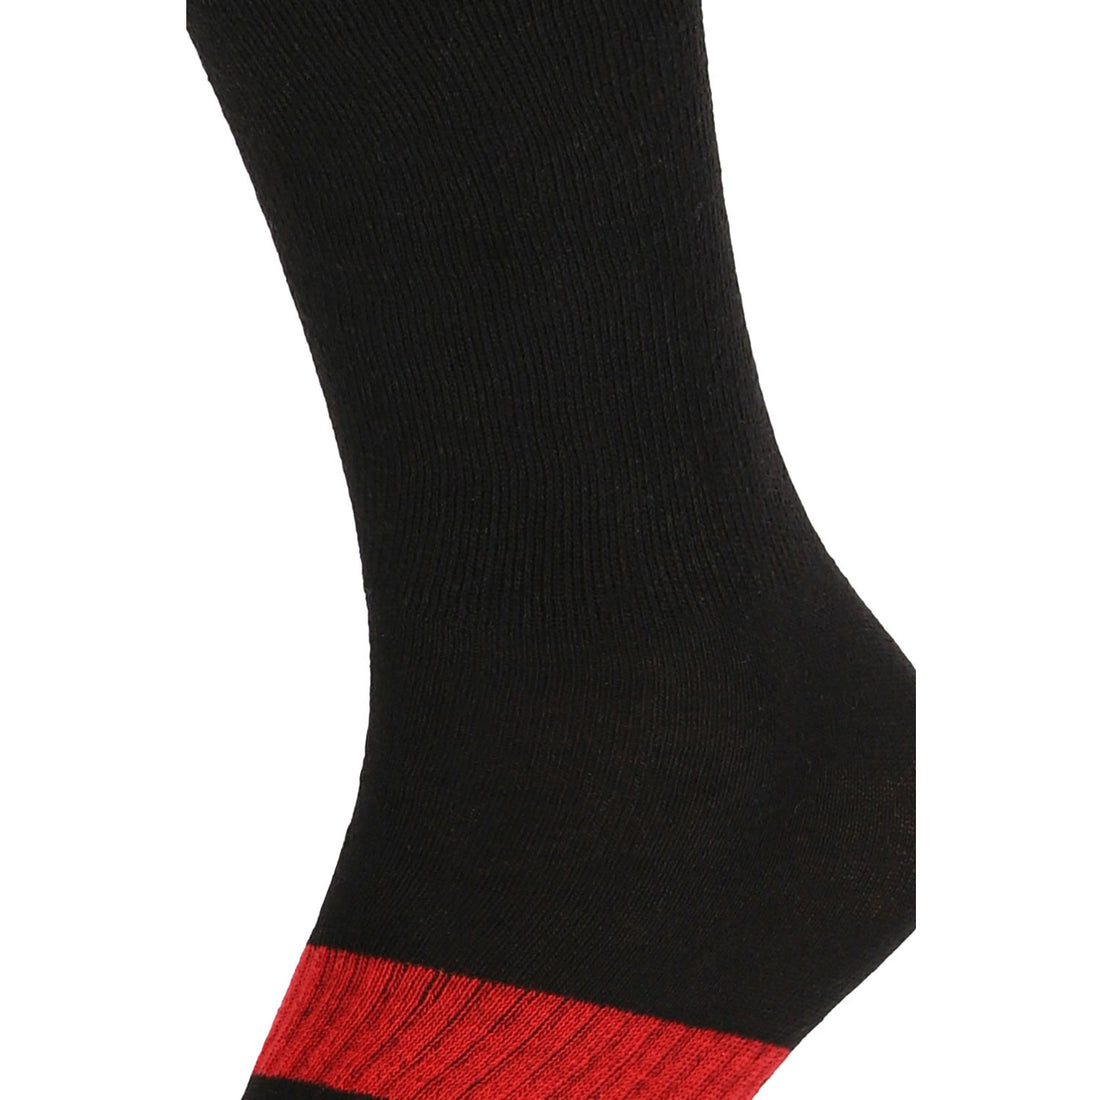 ChiliLifestyle Damen und Herren Compression Knie Socken schwarz 2er